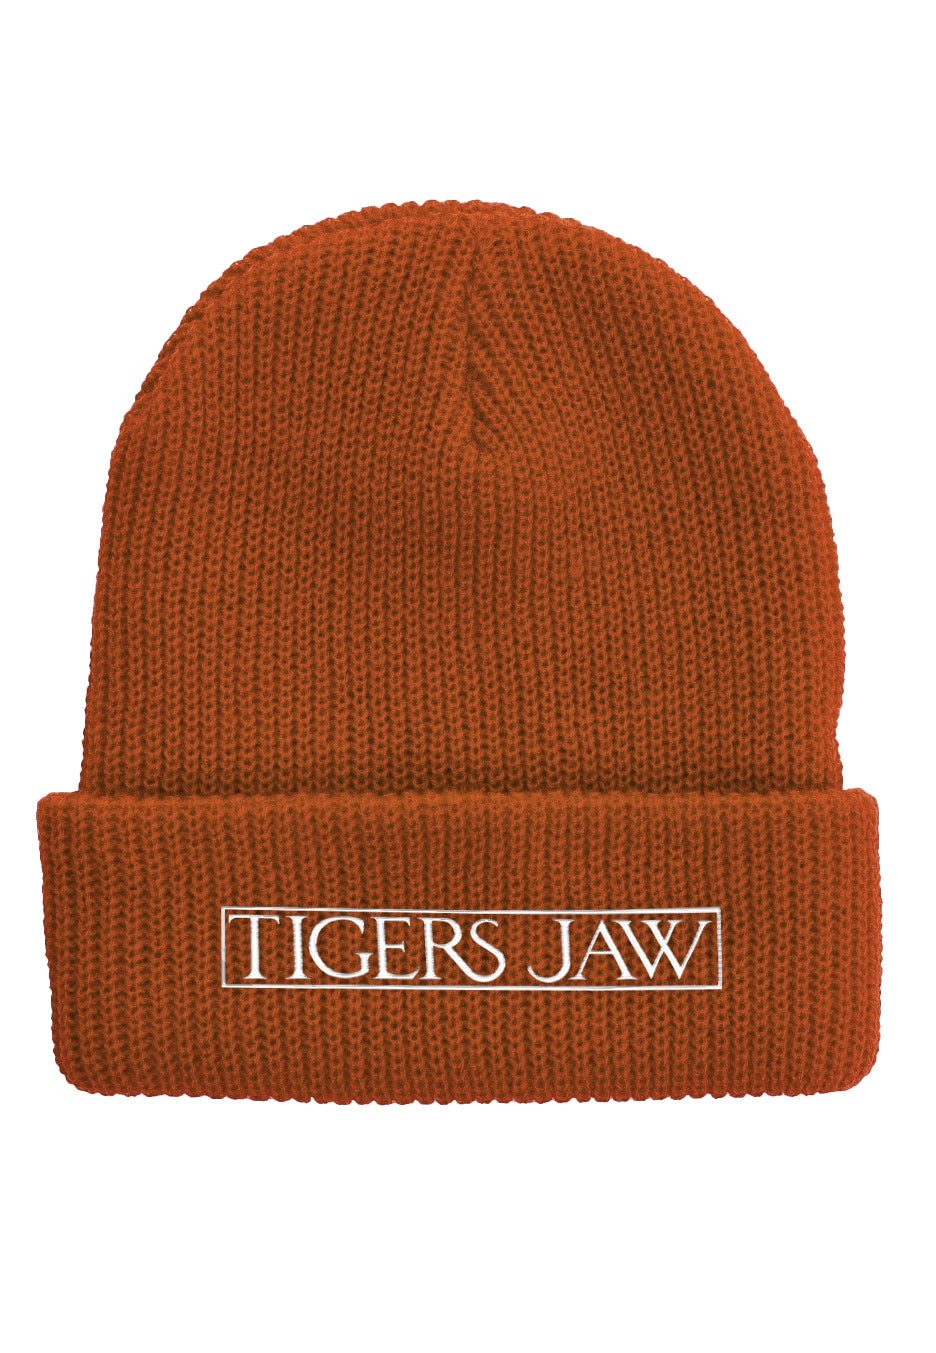 Tigers Jaw - Logo Burnt Orange - Beanie